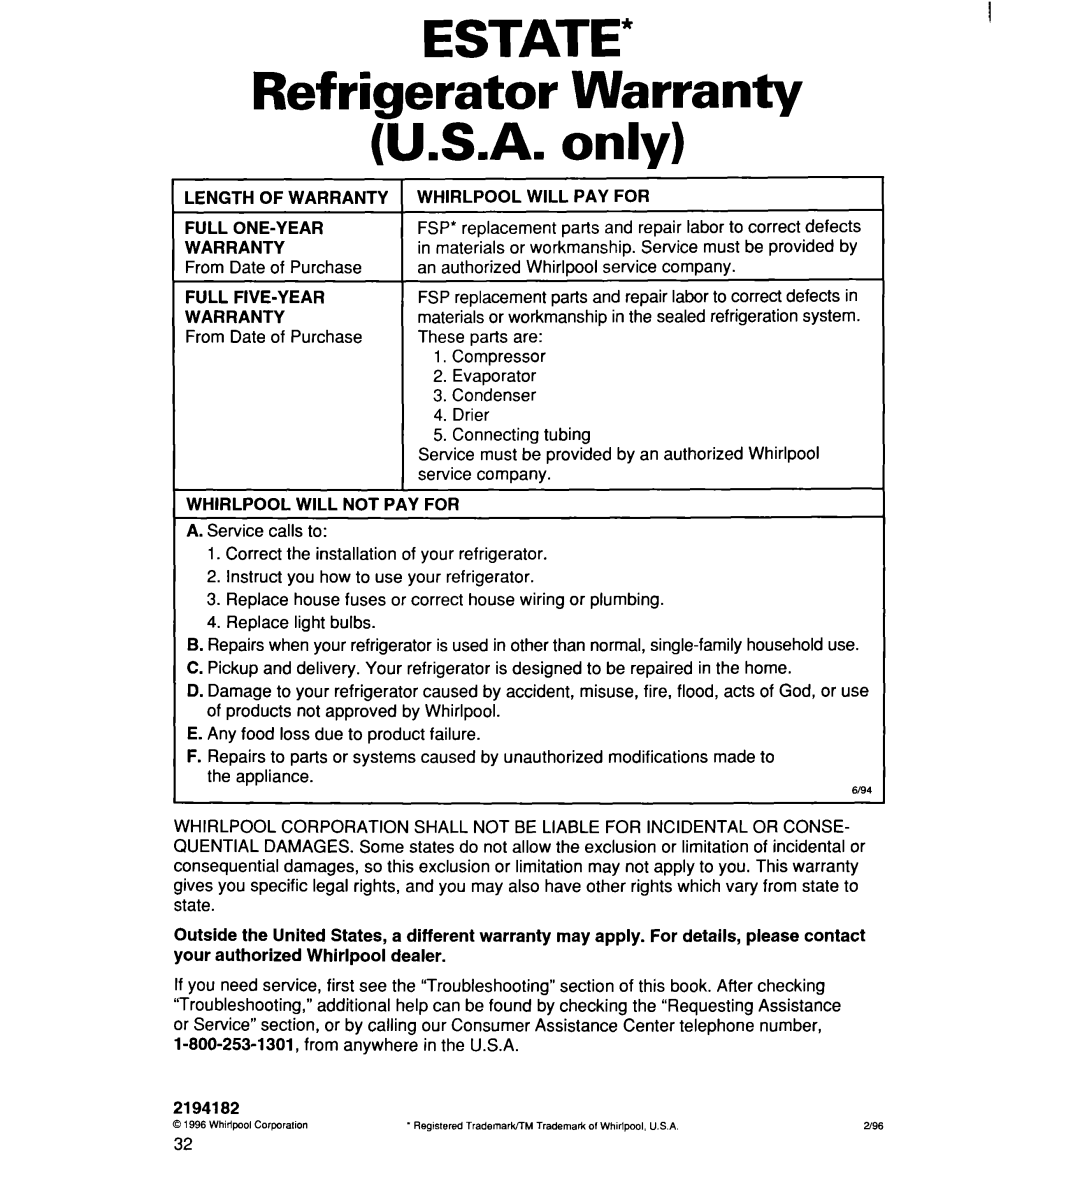 Whirlpool 2194182 warranty ESTATE Refrigerator Warranty U.S.A. only 